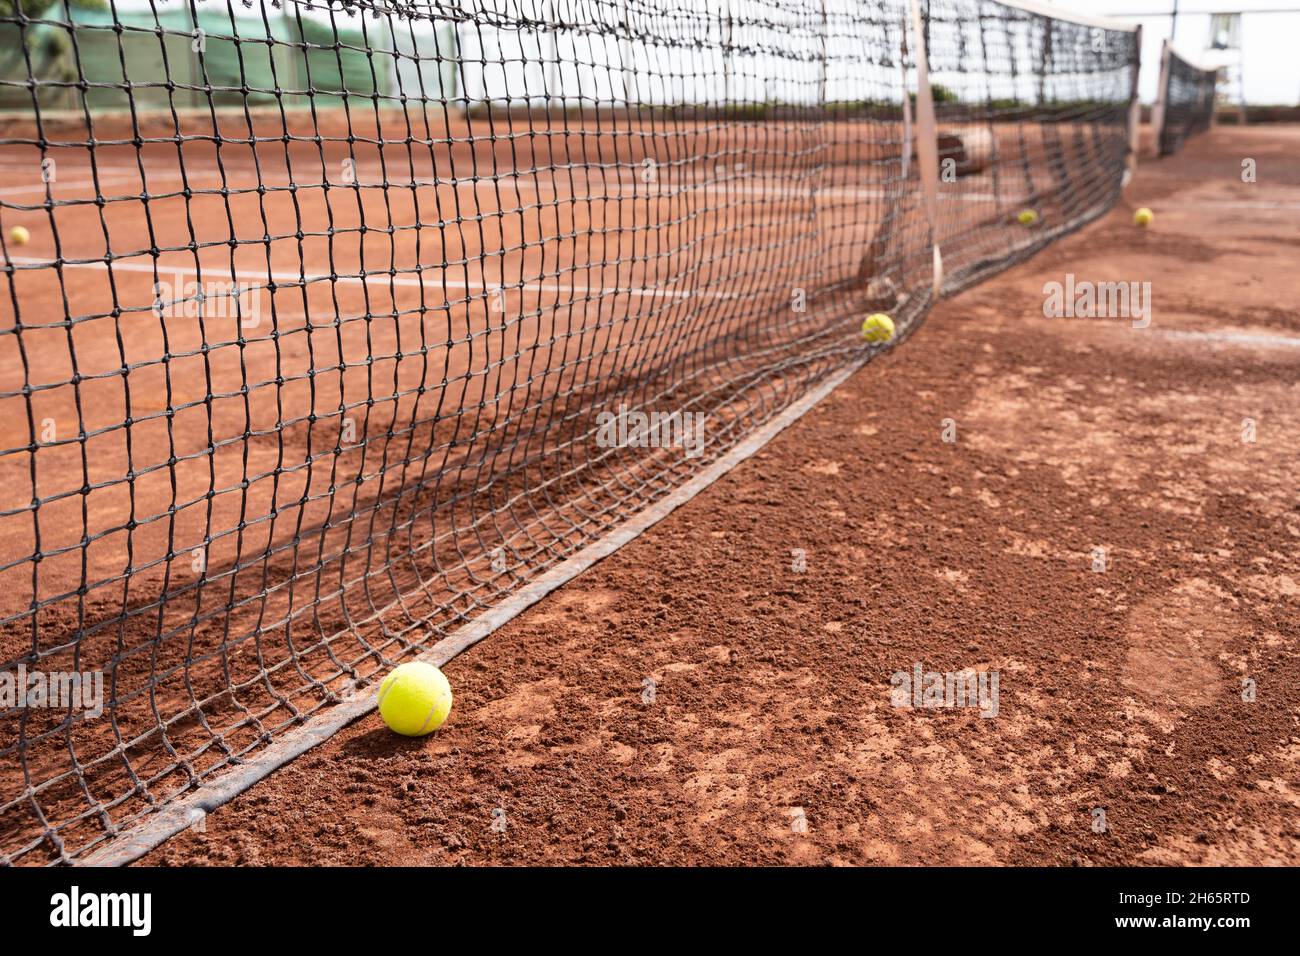 Balles de tennis par filet sur terrain en terre battue.Tournoi sportif, concepts d'entraînement Banque D'Images